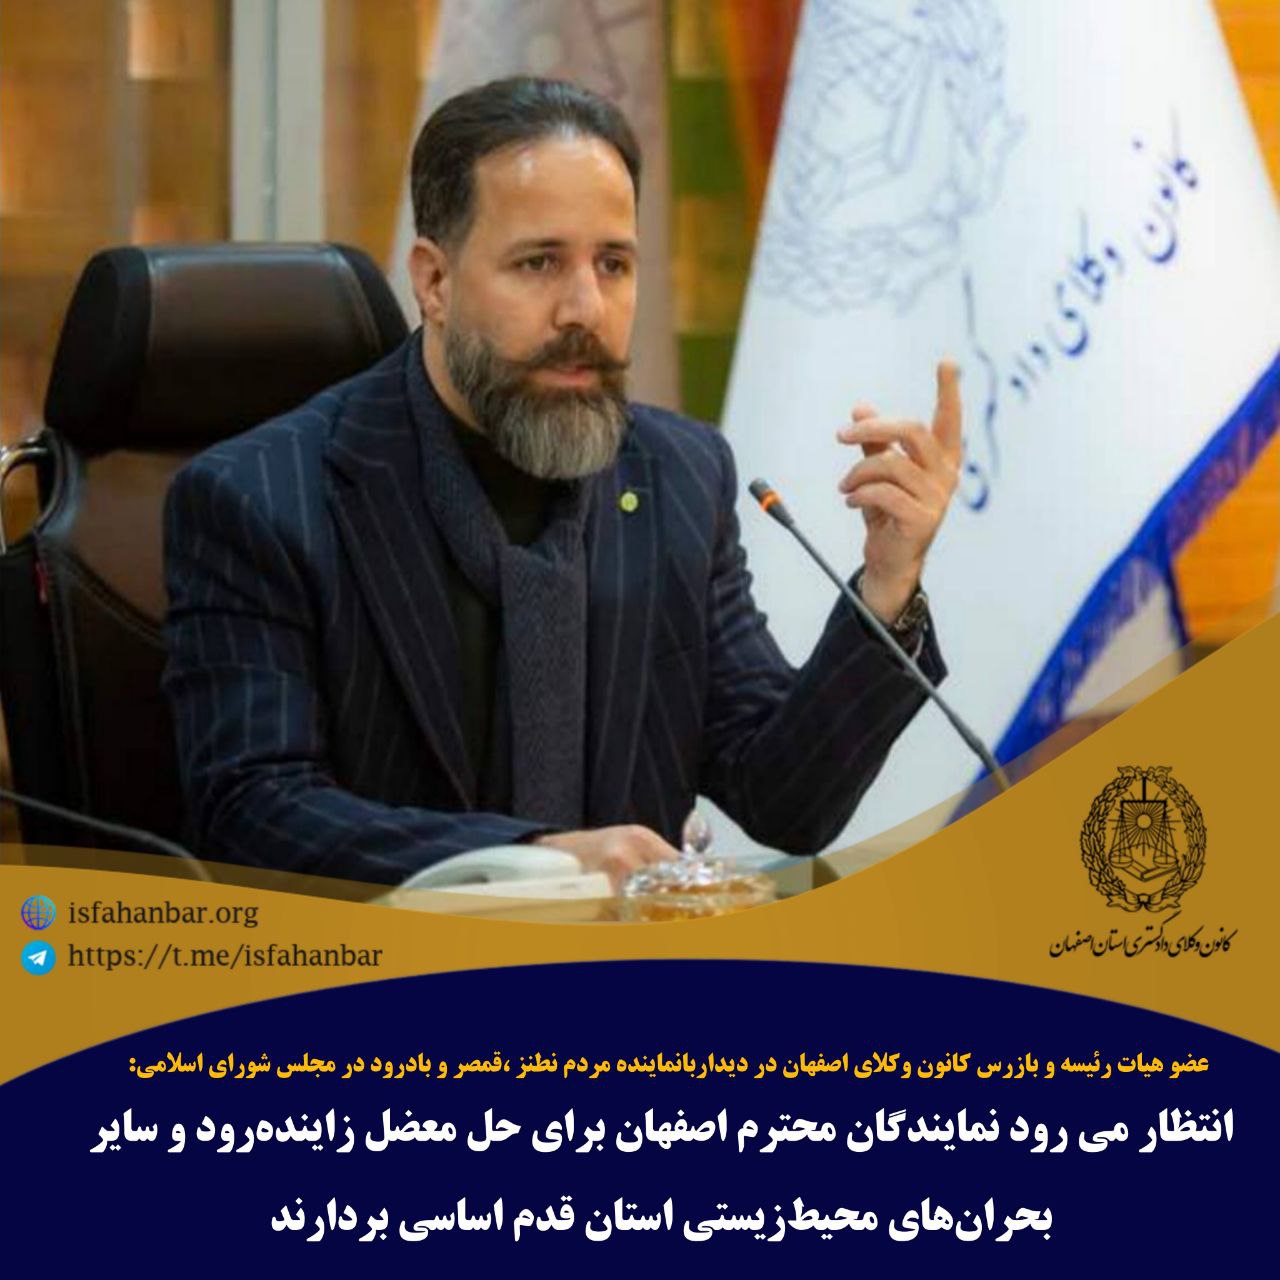 انتظار می رود نمایندگان محترم اصفهان برای حل معضل زاینده رود و سایر بحران های محیط زیستی استان قدم اساسی بردارند